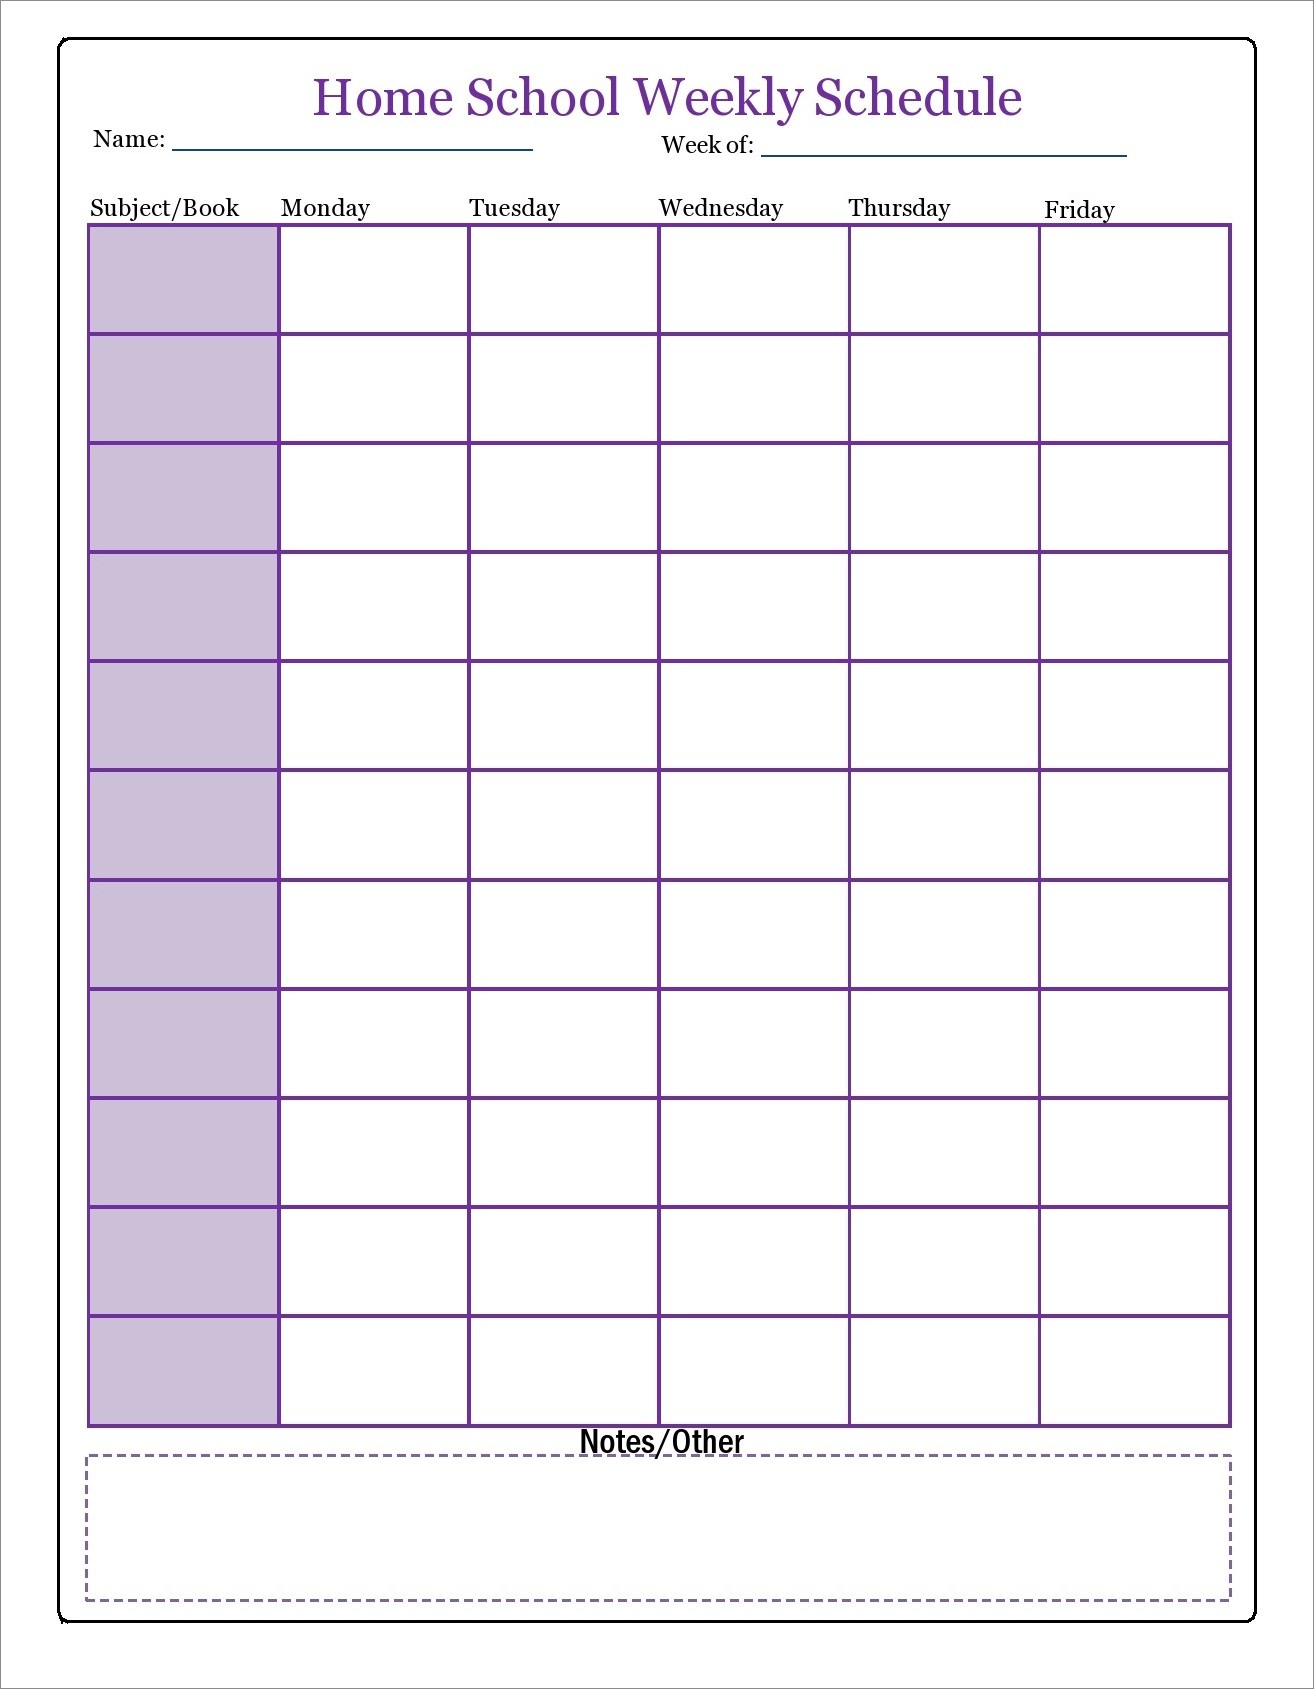 example of homeschool schedule template